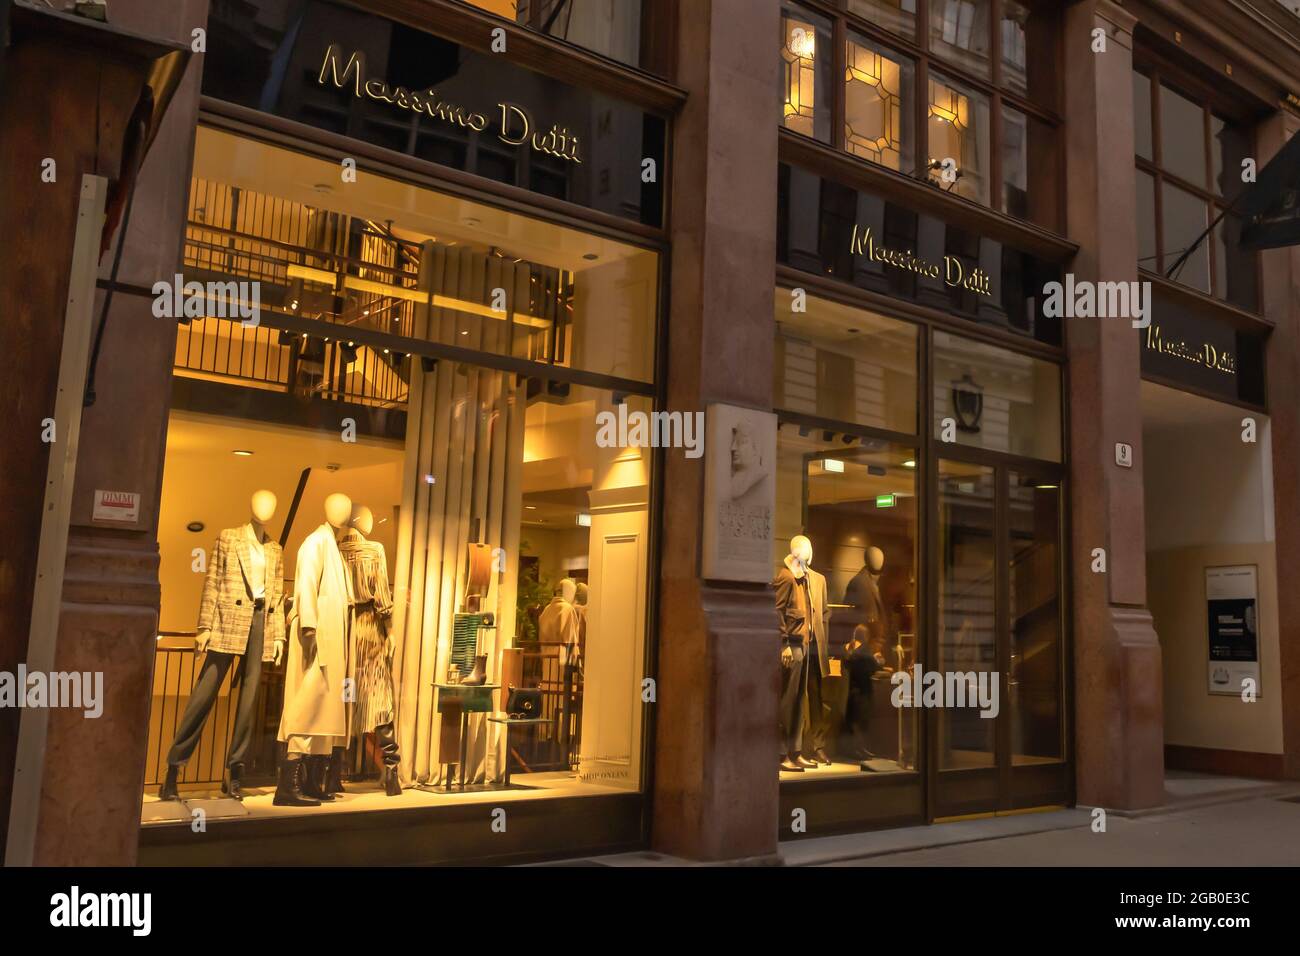 Wien, Österreich - 10. Oktober 2019: Ansicht des Frontladens Massimo Dutti,  eines spanischen Bekleidungsherstellers, das zur Inditex-Gruppe gehört, in  Stockfotografie - Alamy